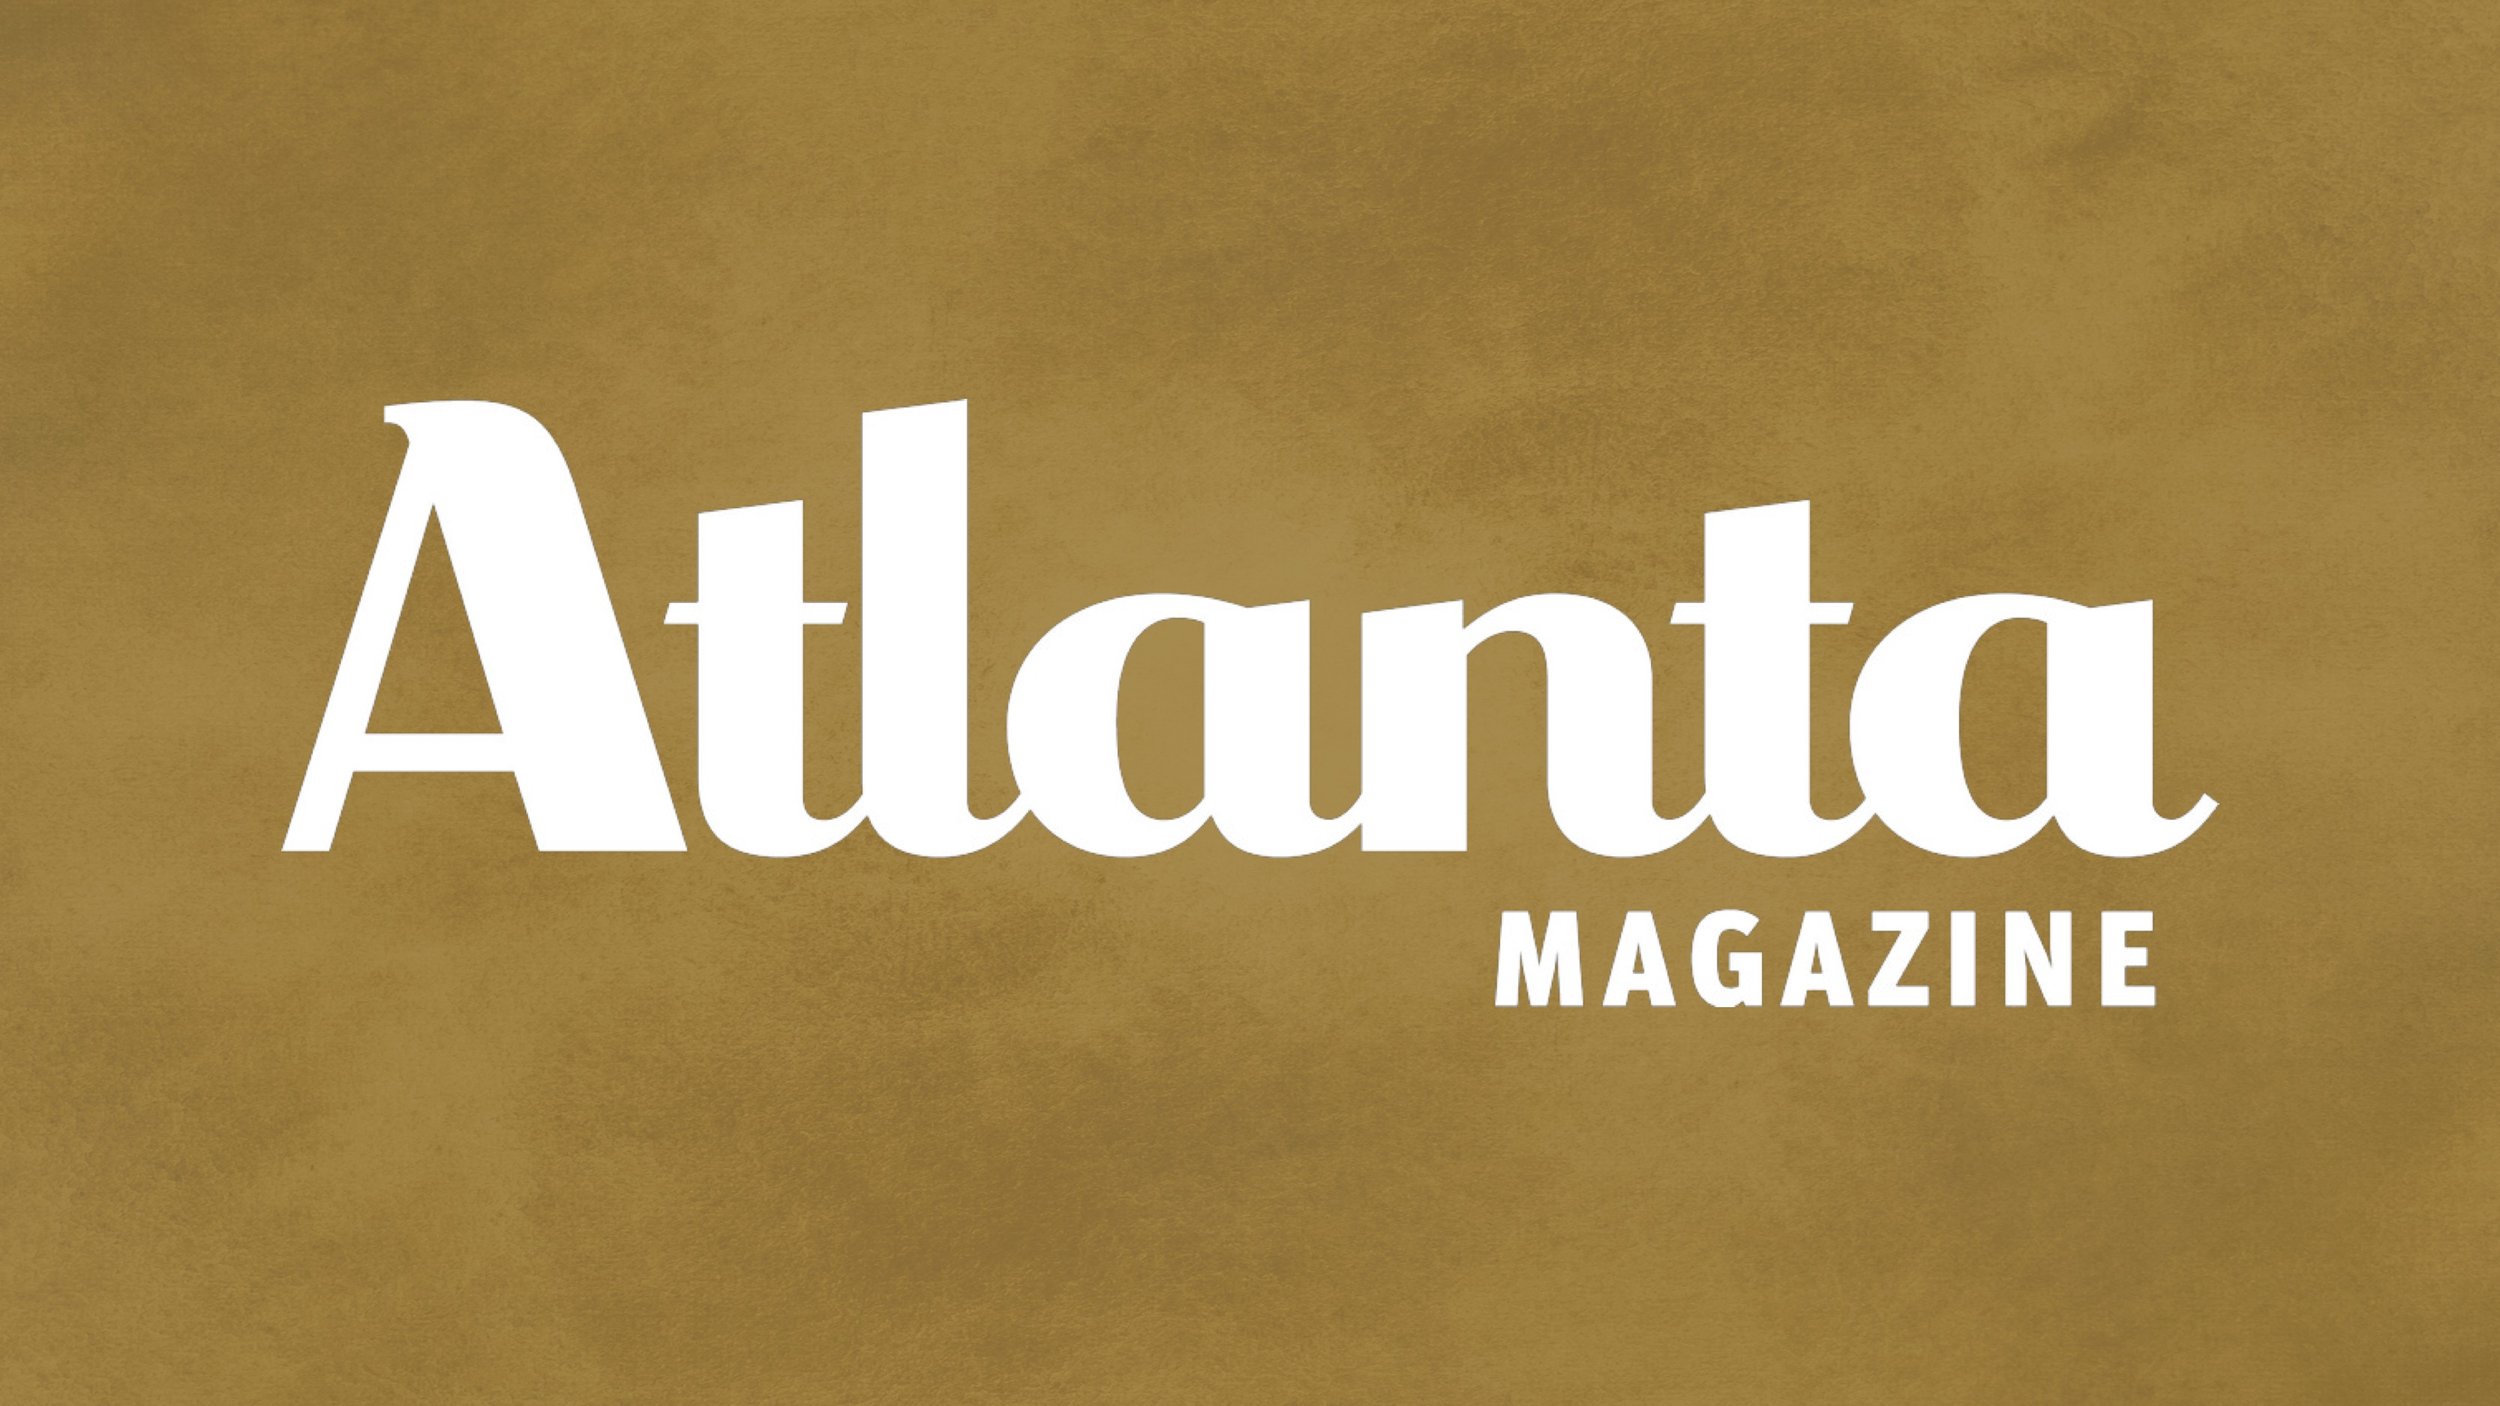 Logo_Card_Atlanta_Magazine.jpg